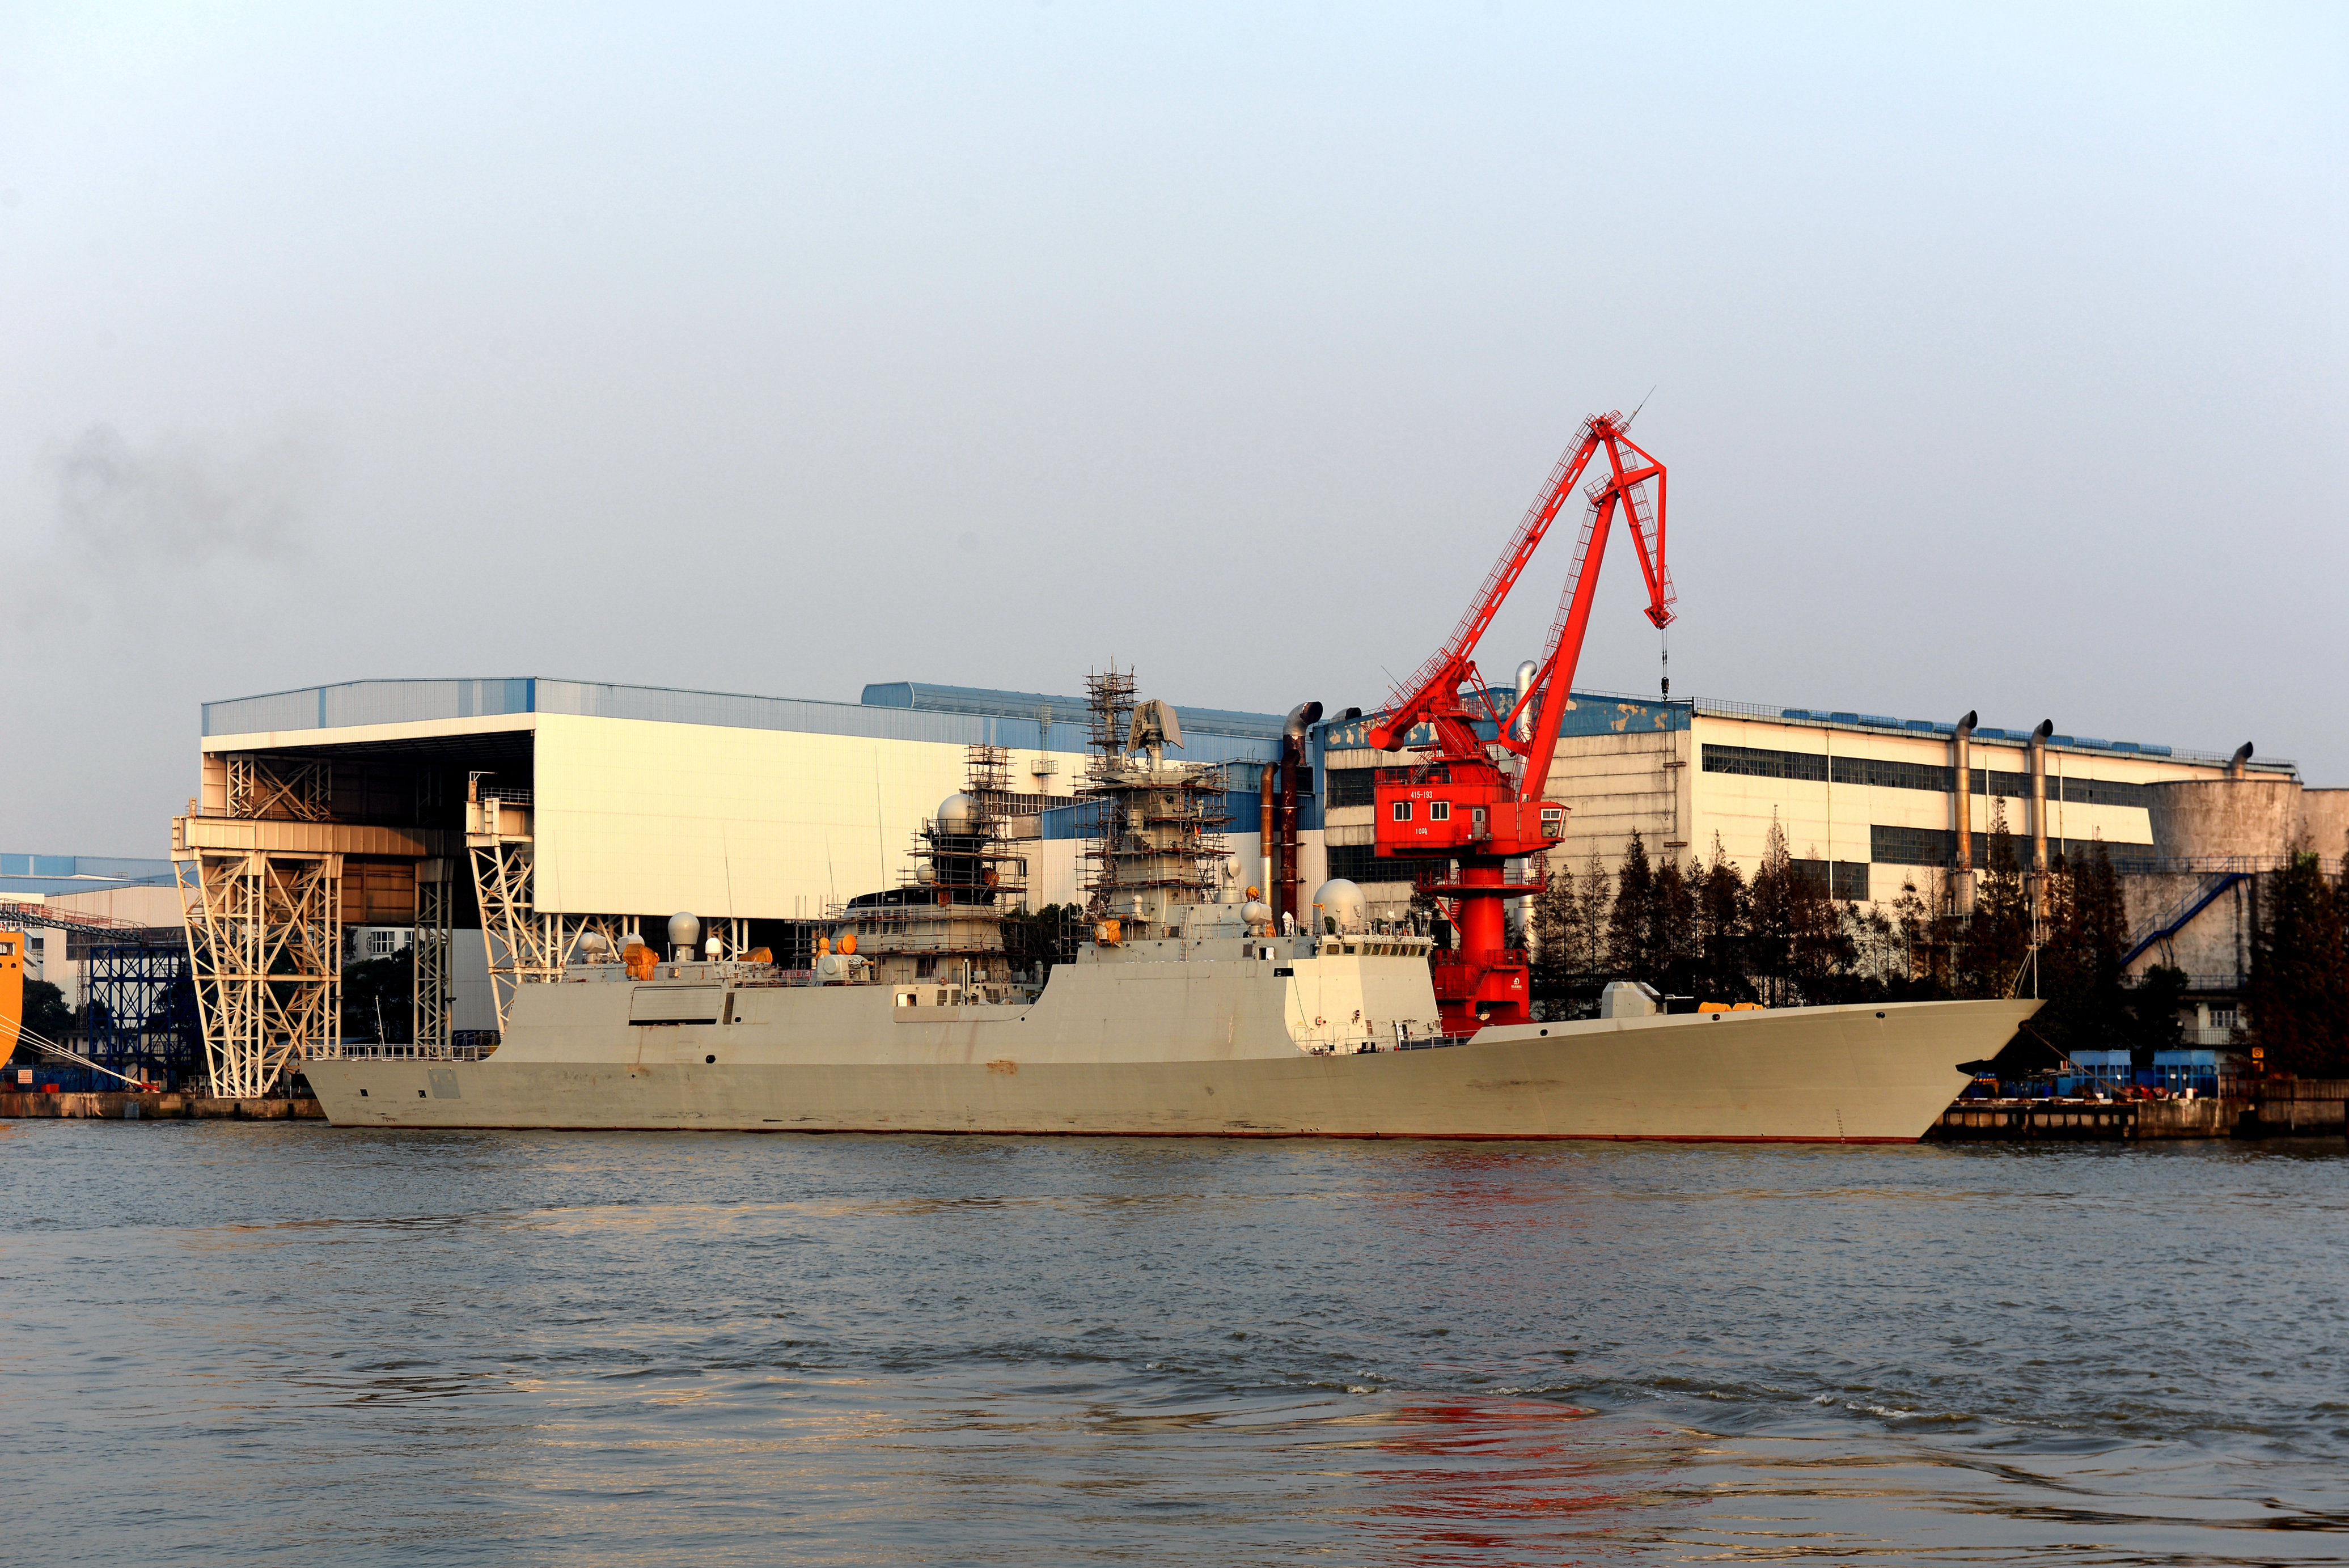 La 25ème frégate Type 054A en agencement au chantier naval Hudong-Zhonghua